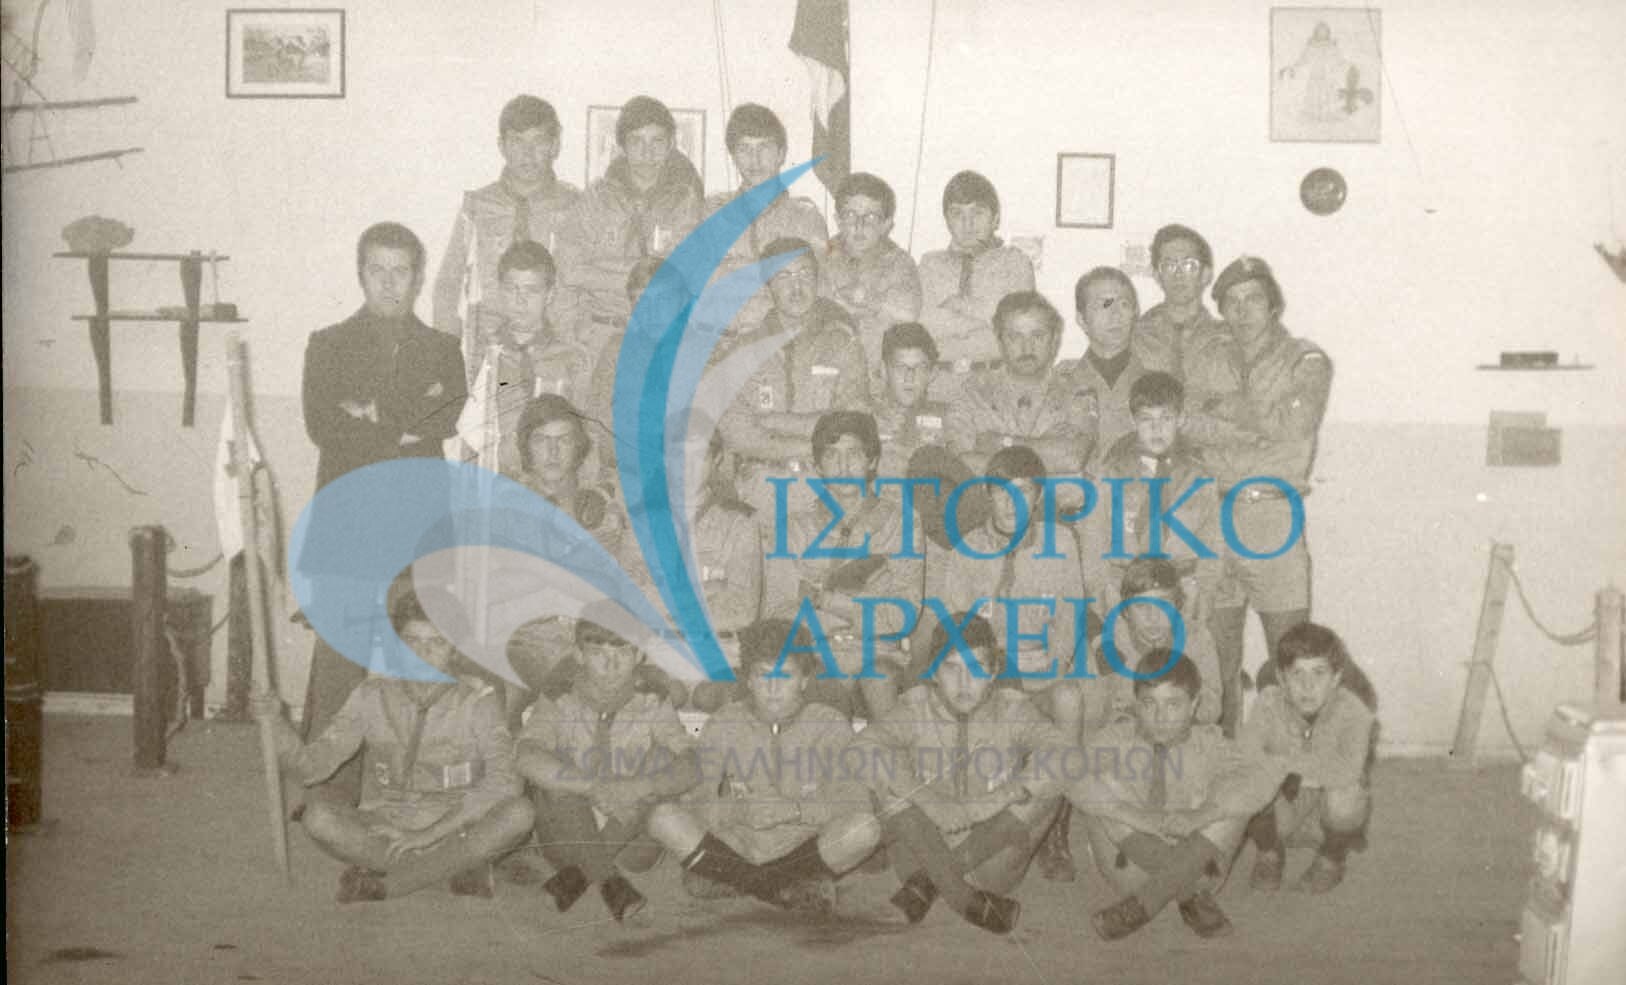 Η Ομάδα Ελευθερούπολης Καβάλας στην εστία της το 1978.